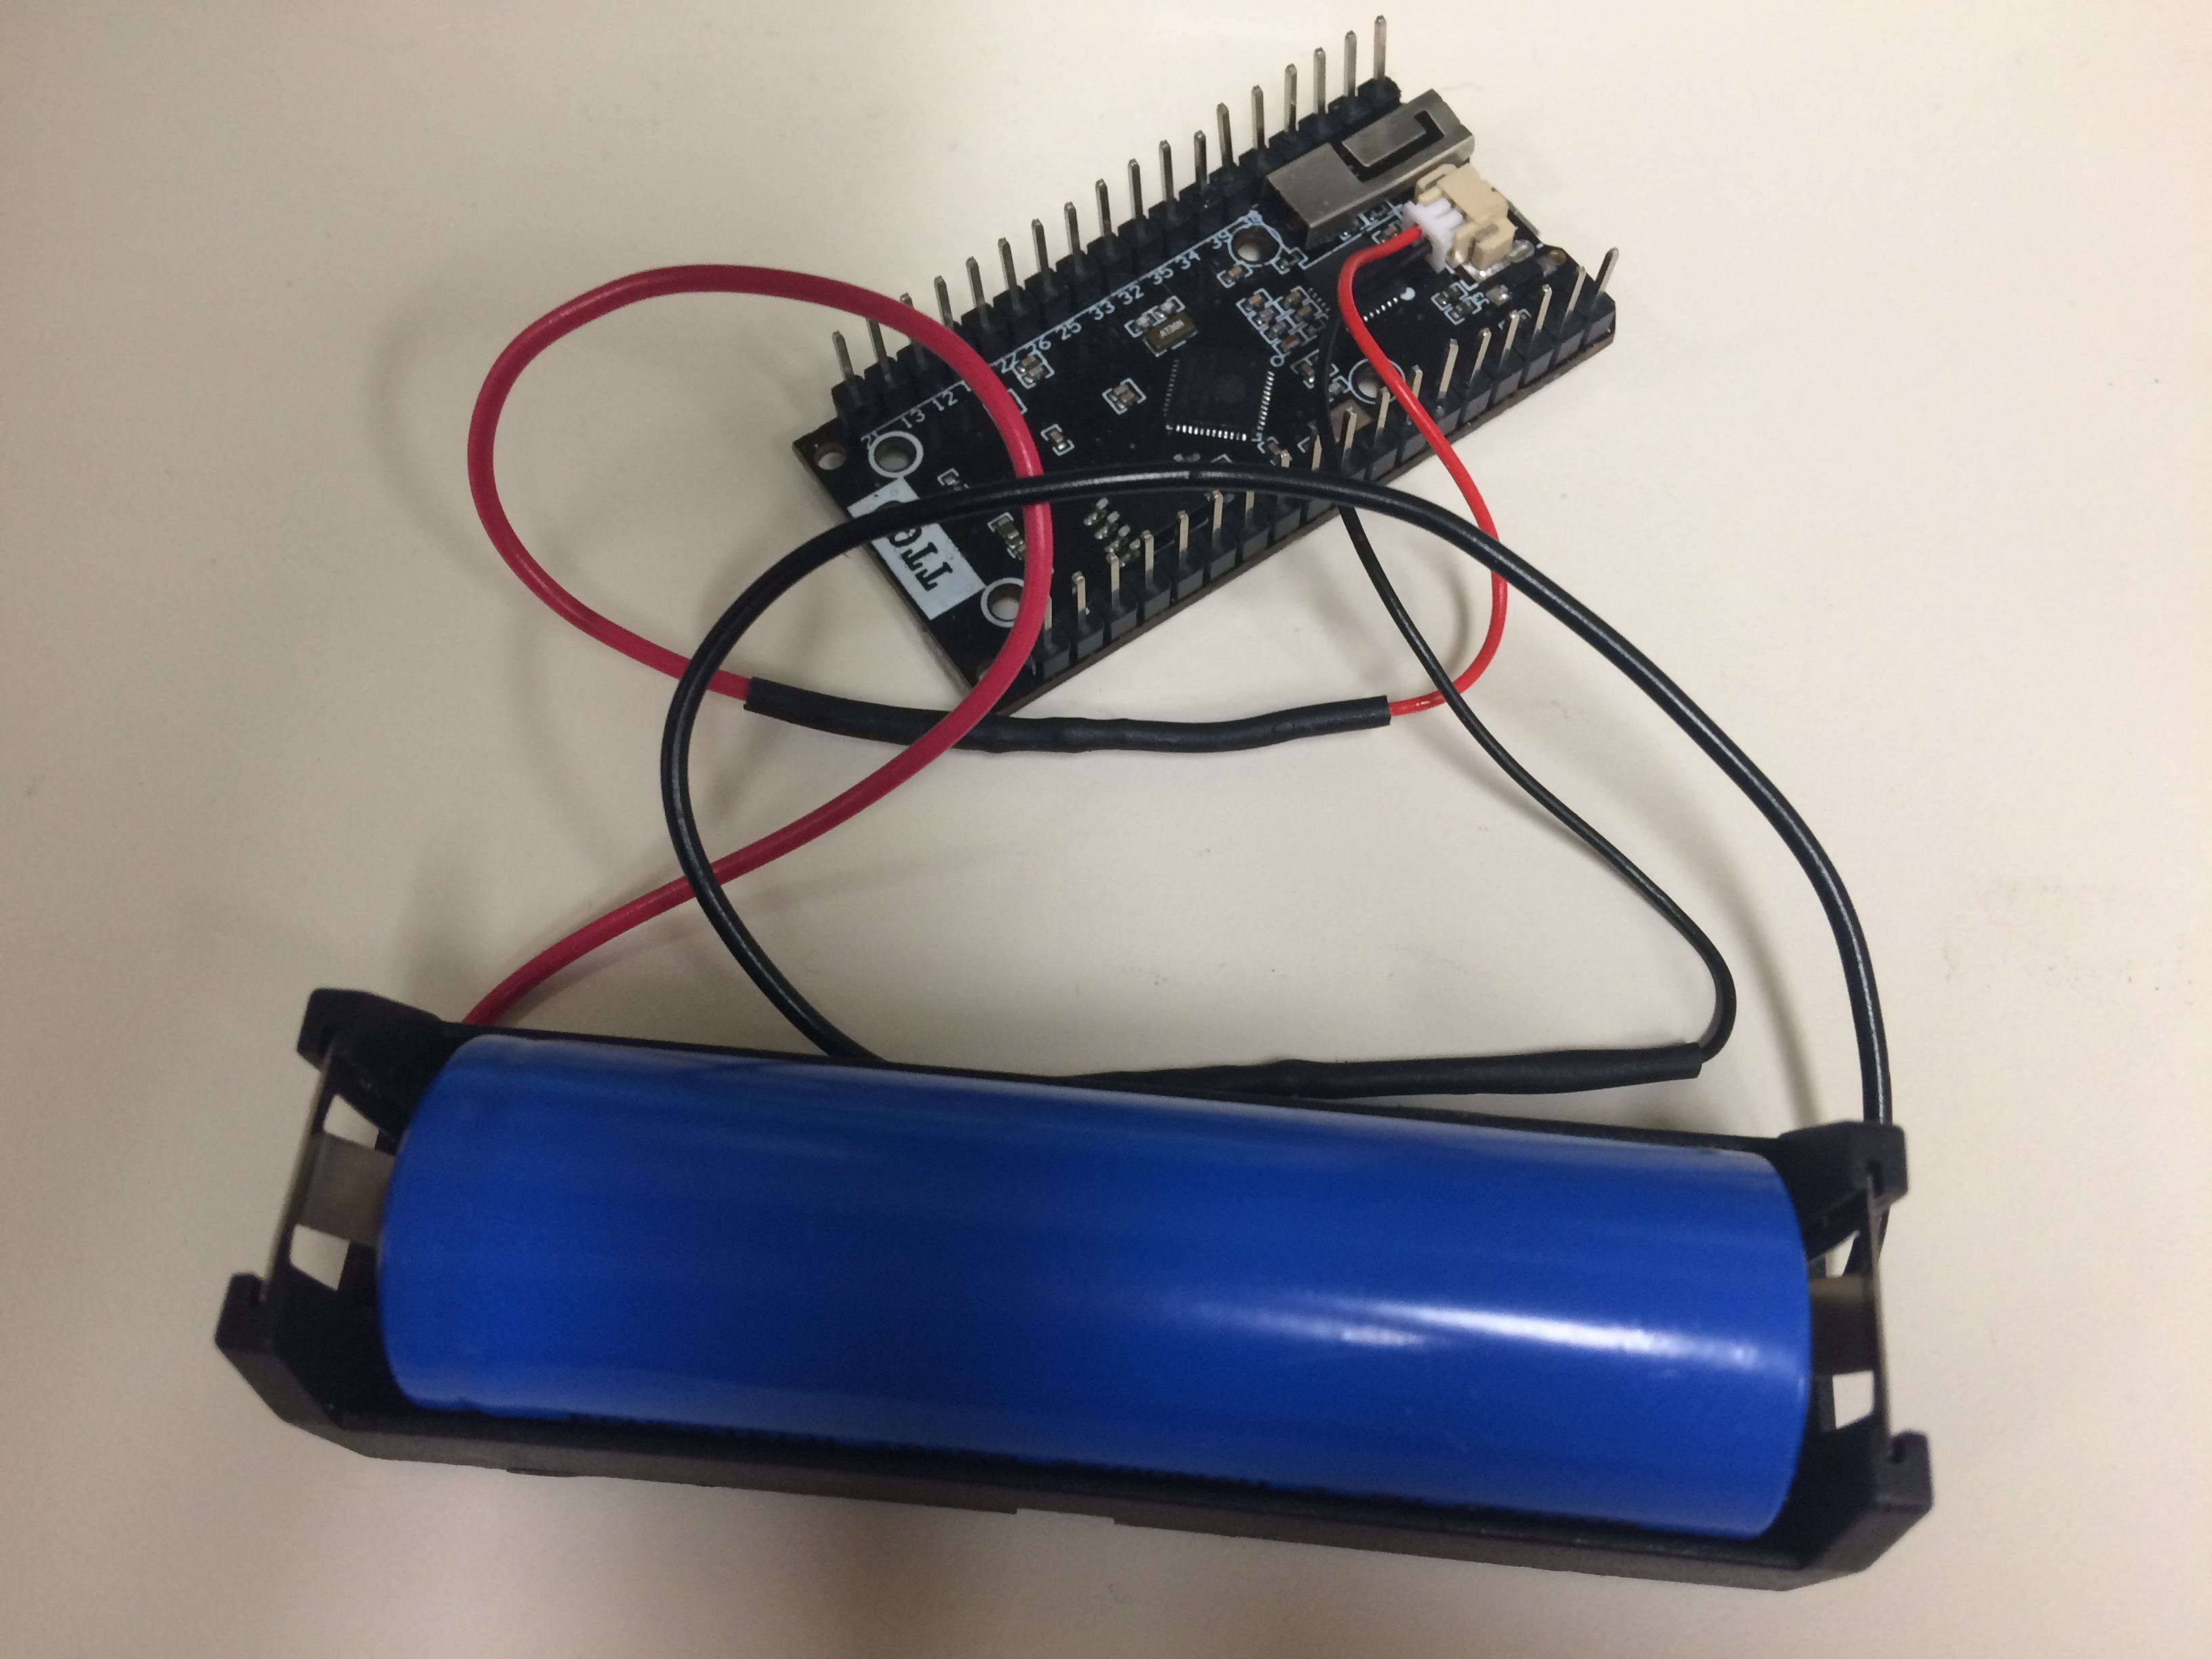 Using an 18650 Battery with TTGO ESP32 SX1276 Microcontroller